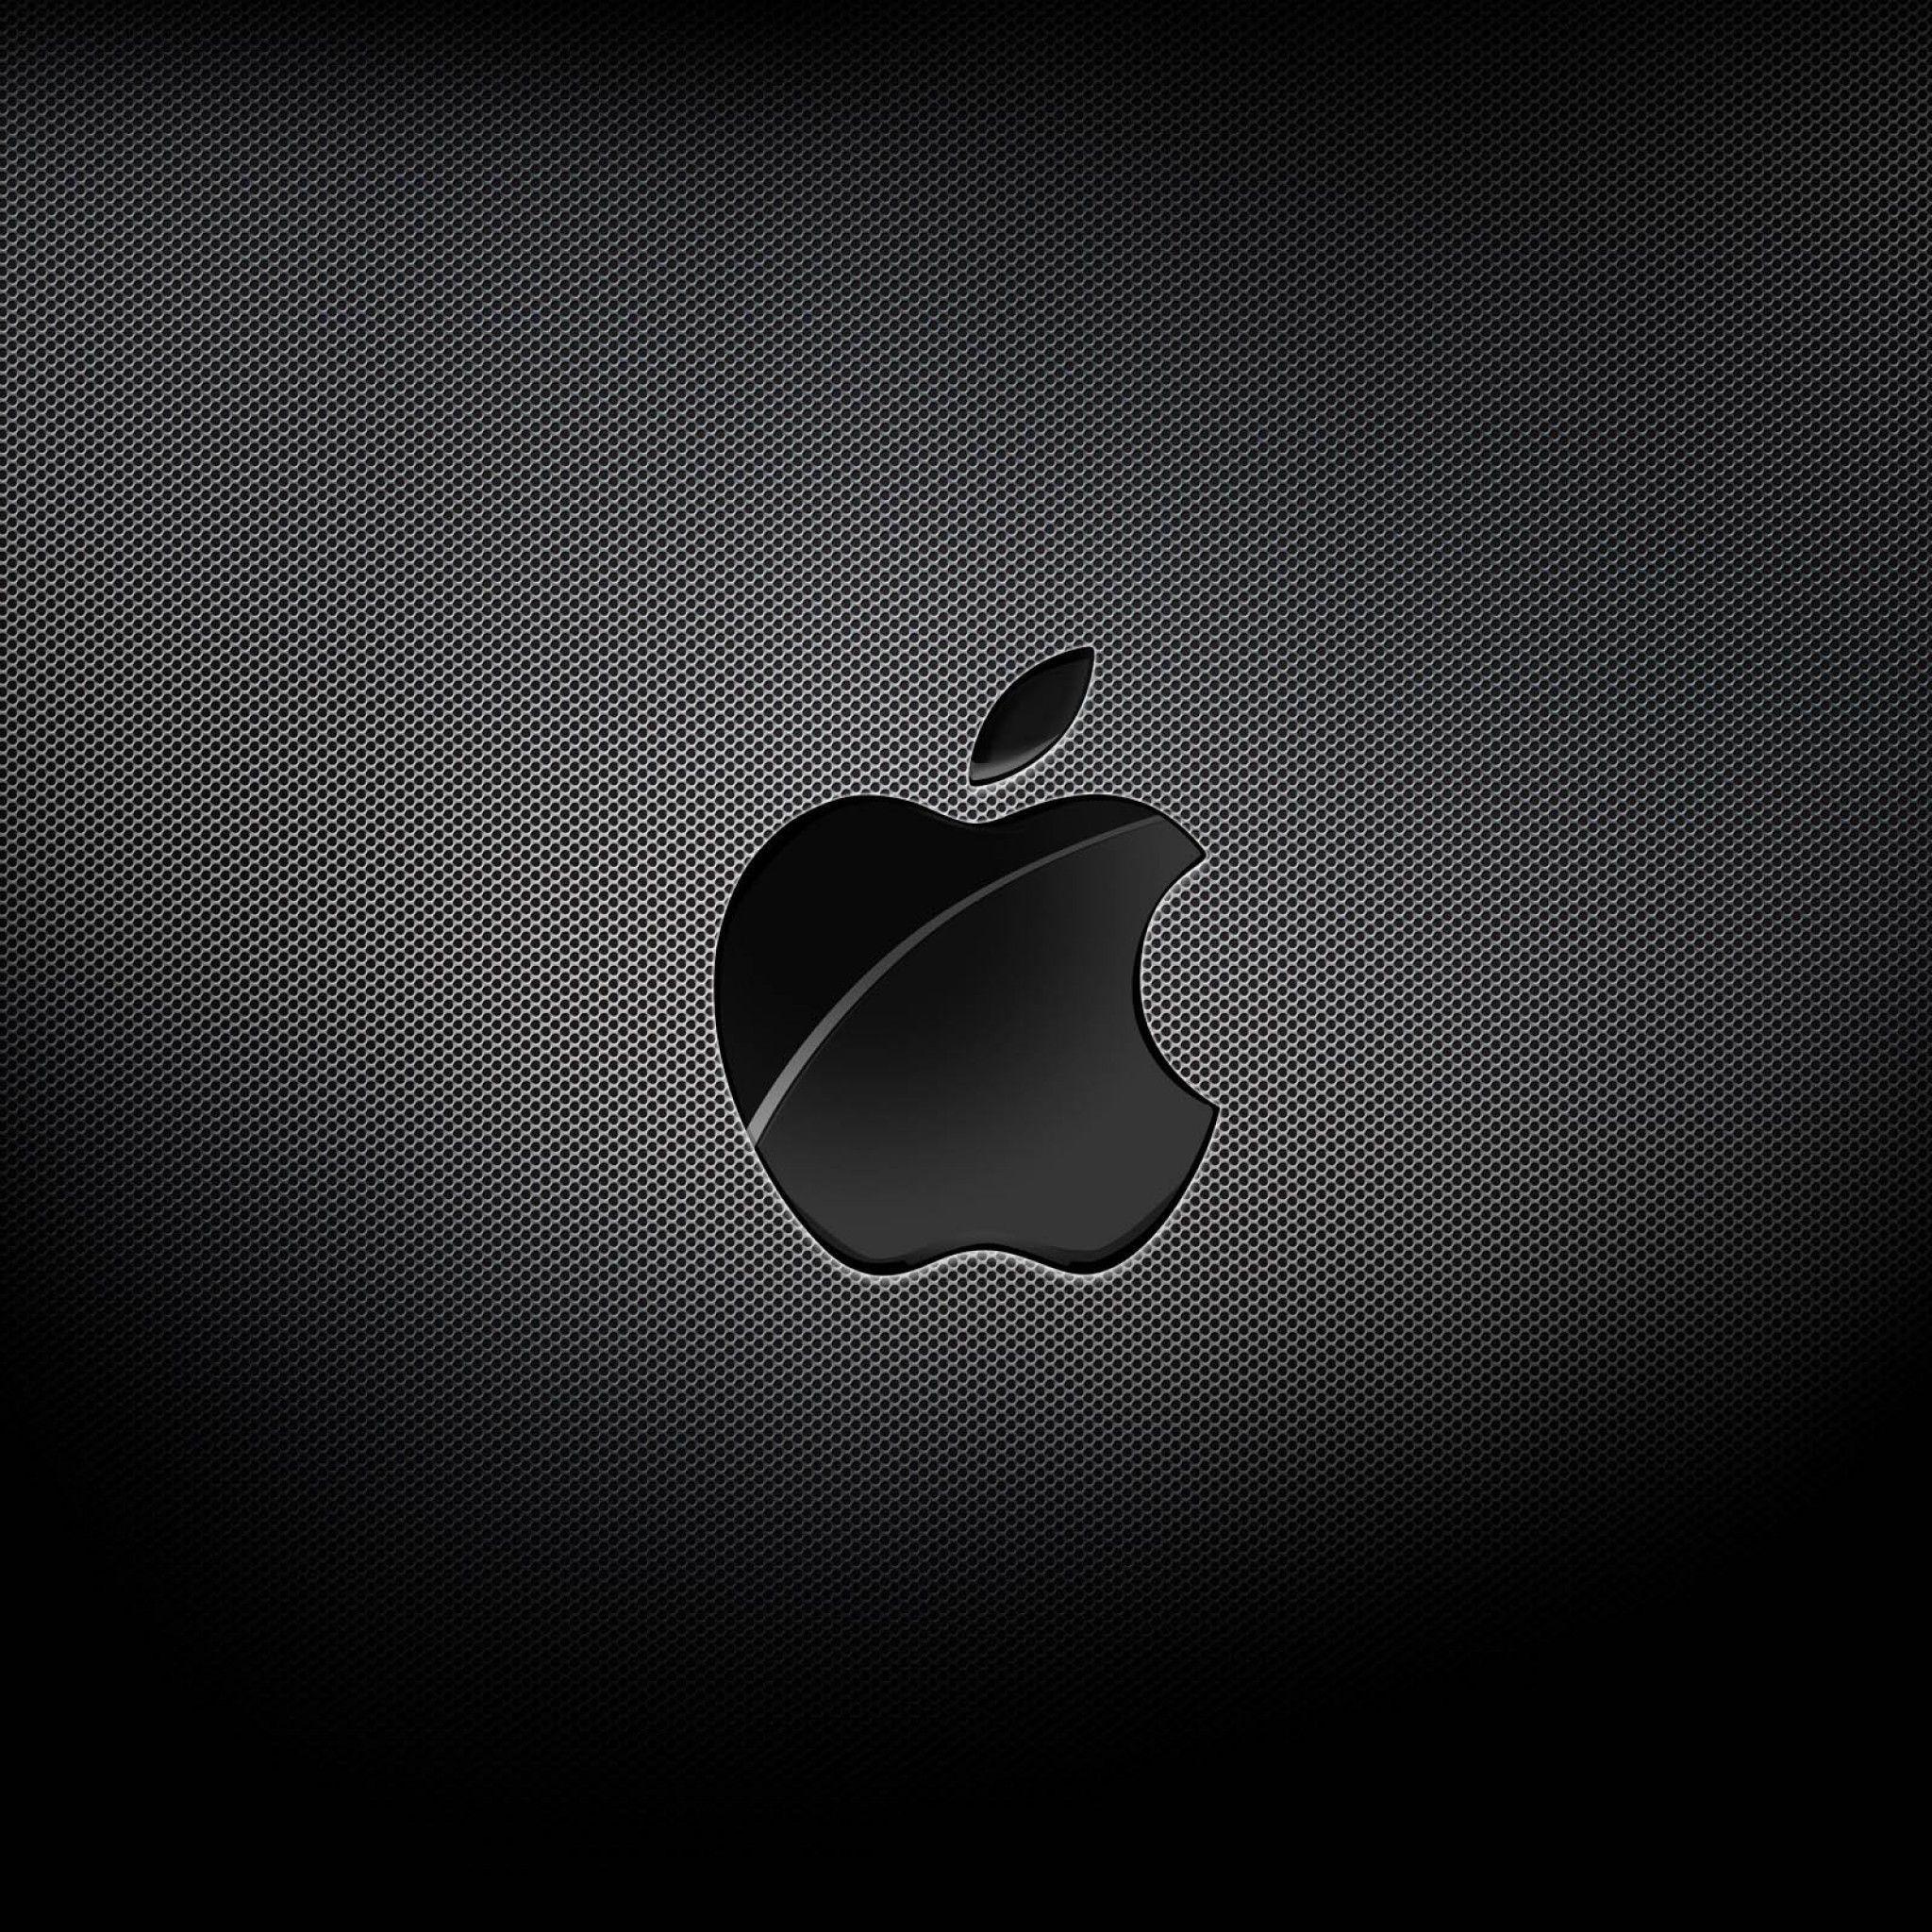 2048x2048 Hình nền iPhone 4s Màu đen - Đang xem Thư viện. Hình nền iPad